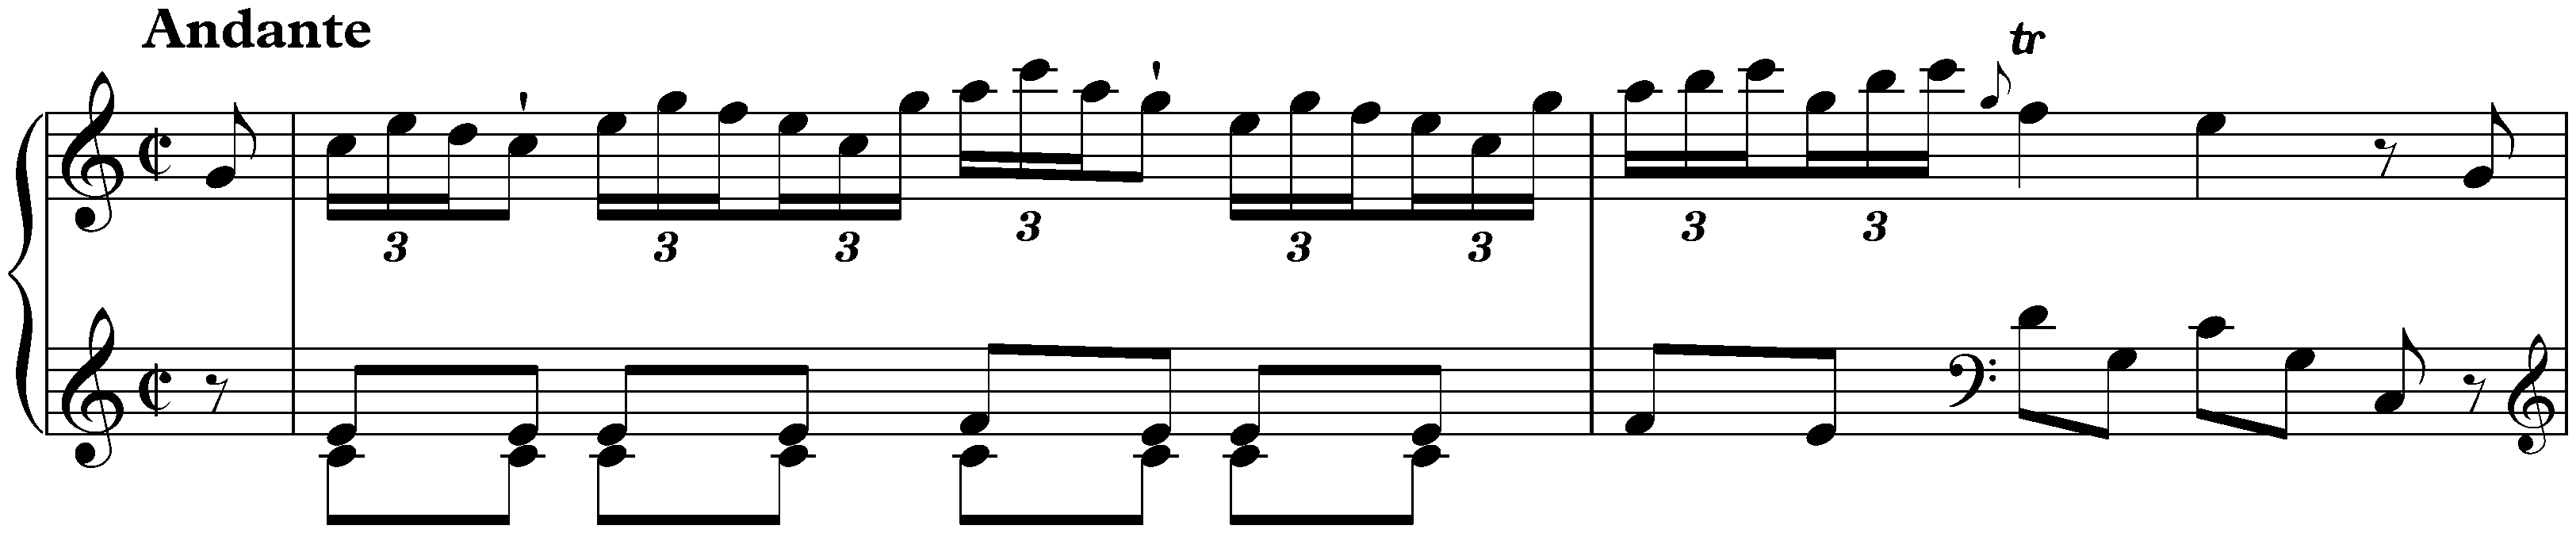 Sonata in C major, Hob. XVI:1; 2. Andante